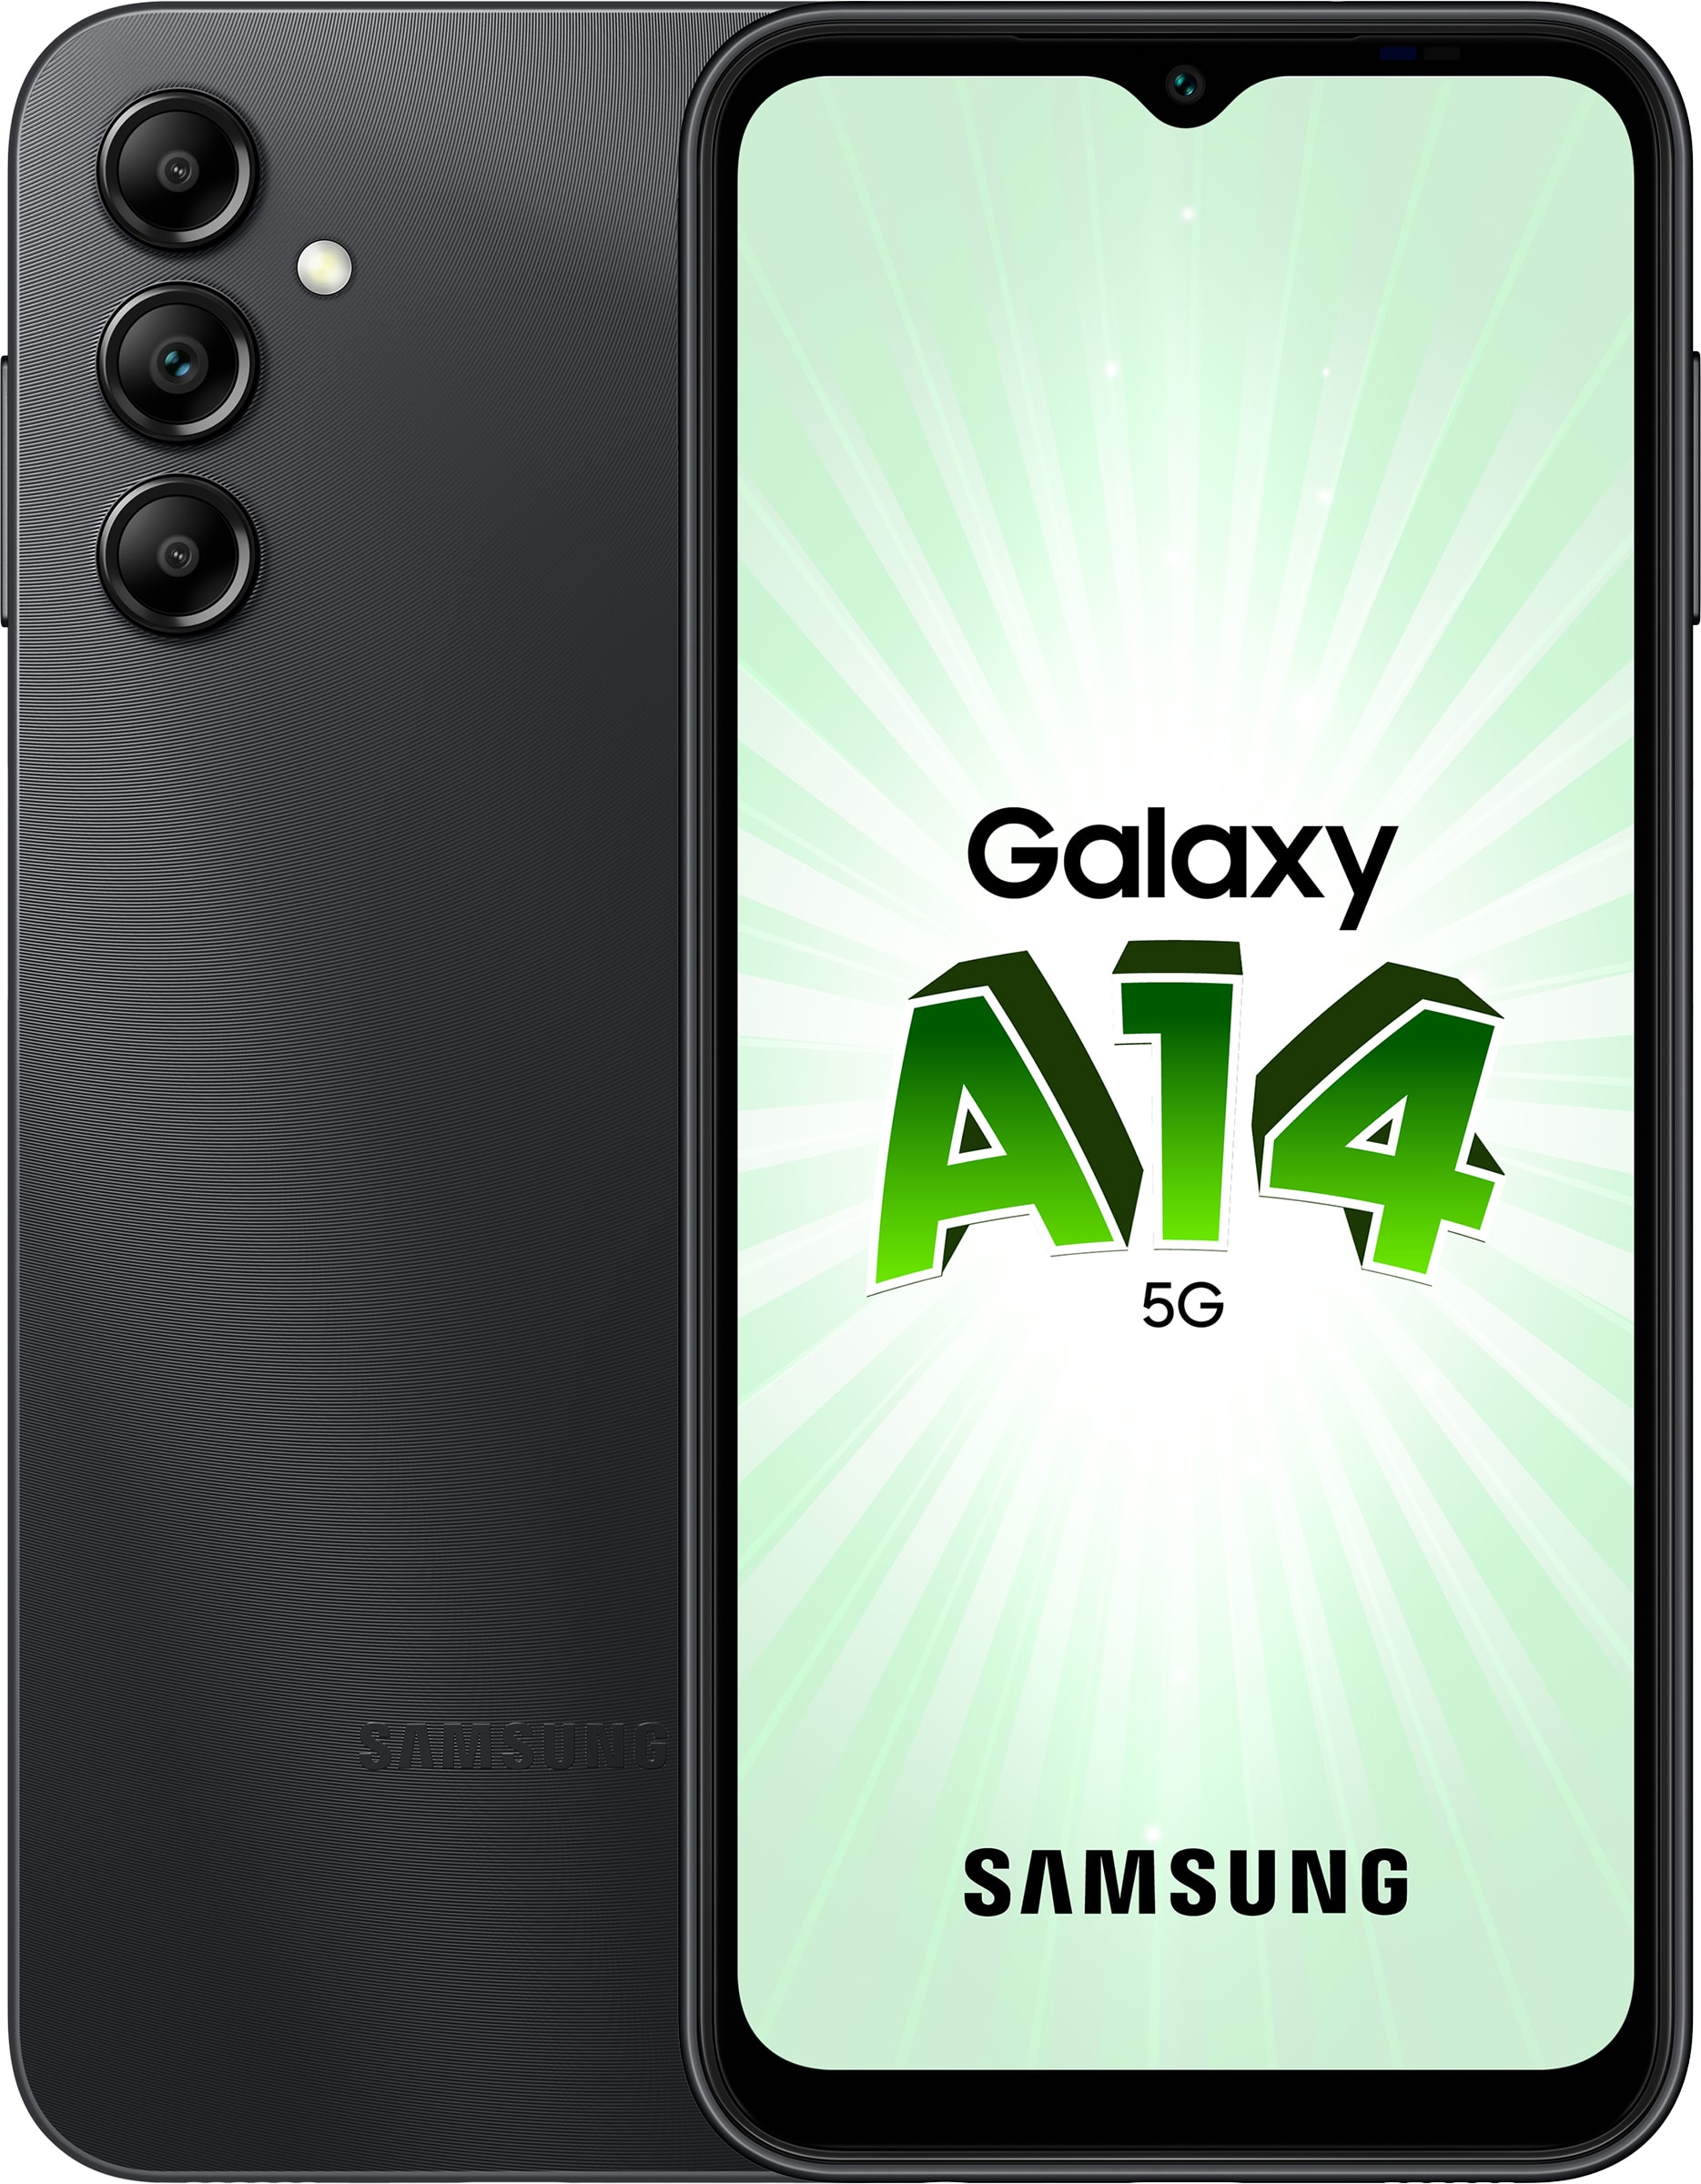 Téléphone portable Samsung Galaxy S Iii Mini 3G 1 Go Ram pas cher - Achat  neuf et occasion à prix réduit